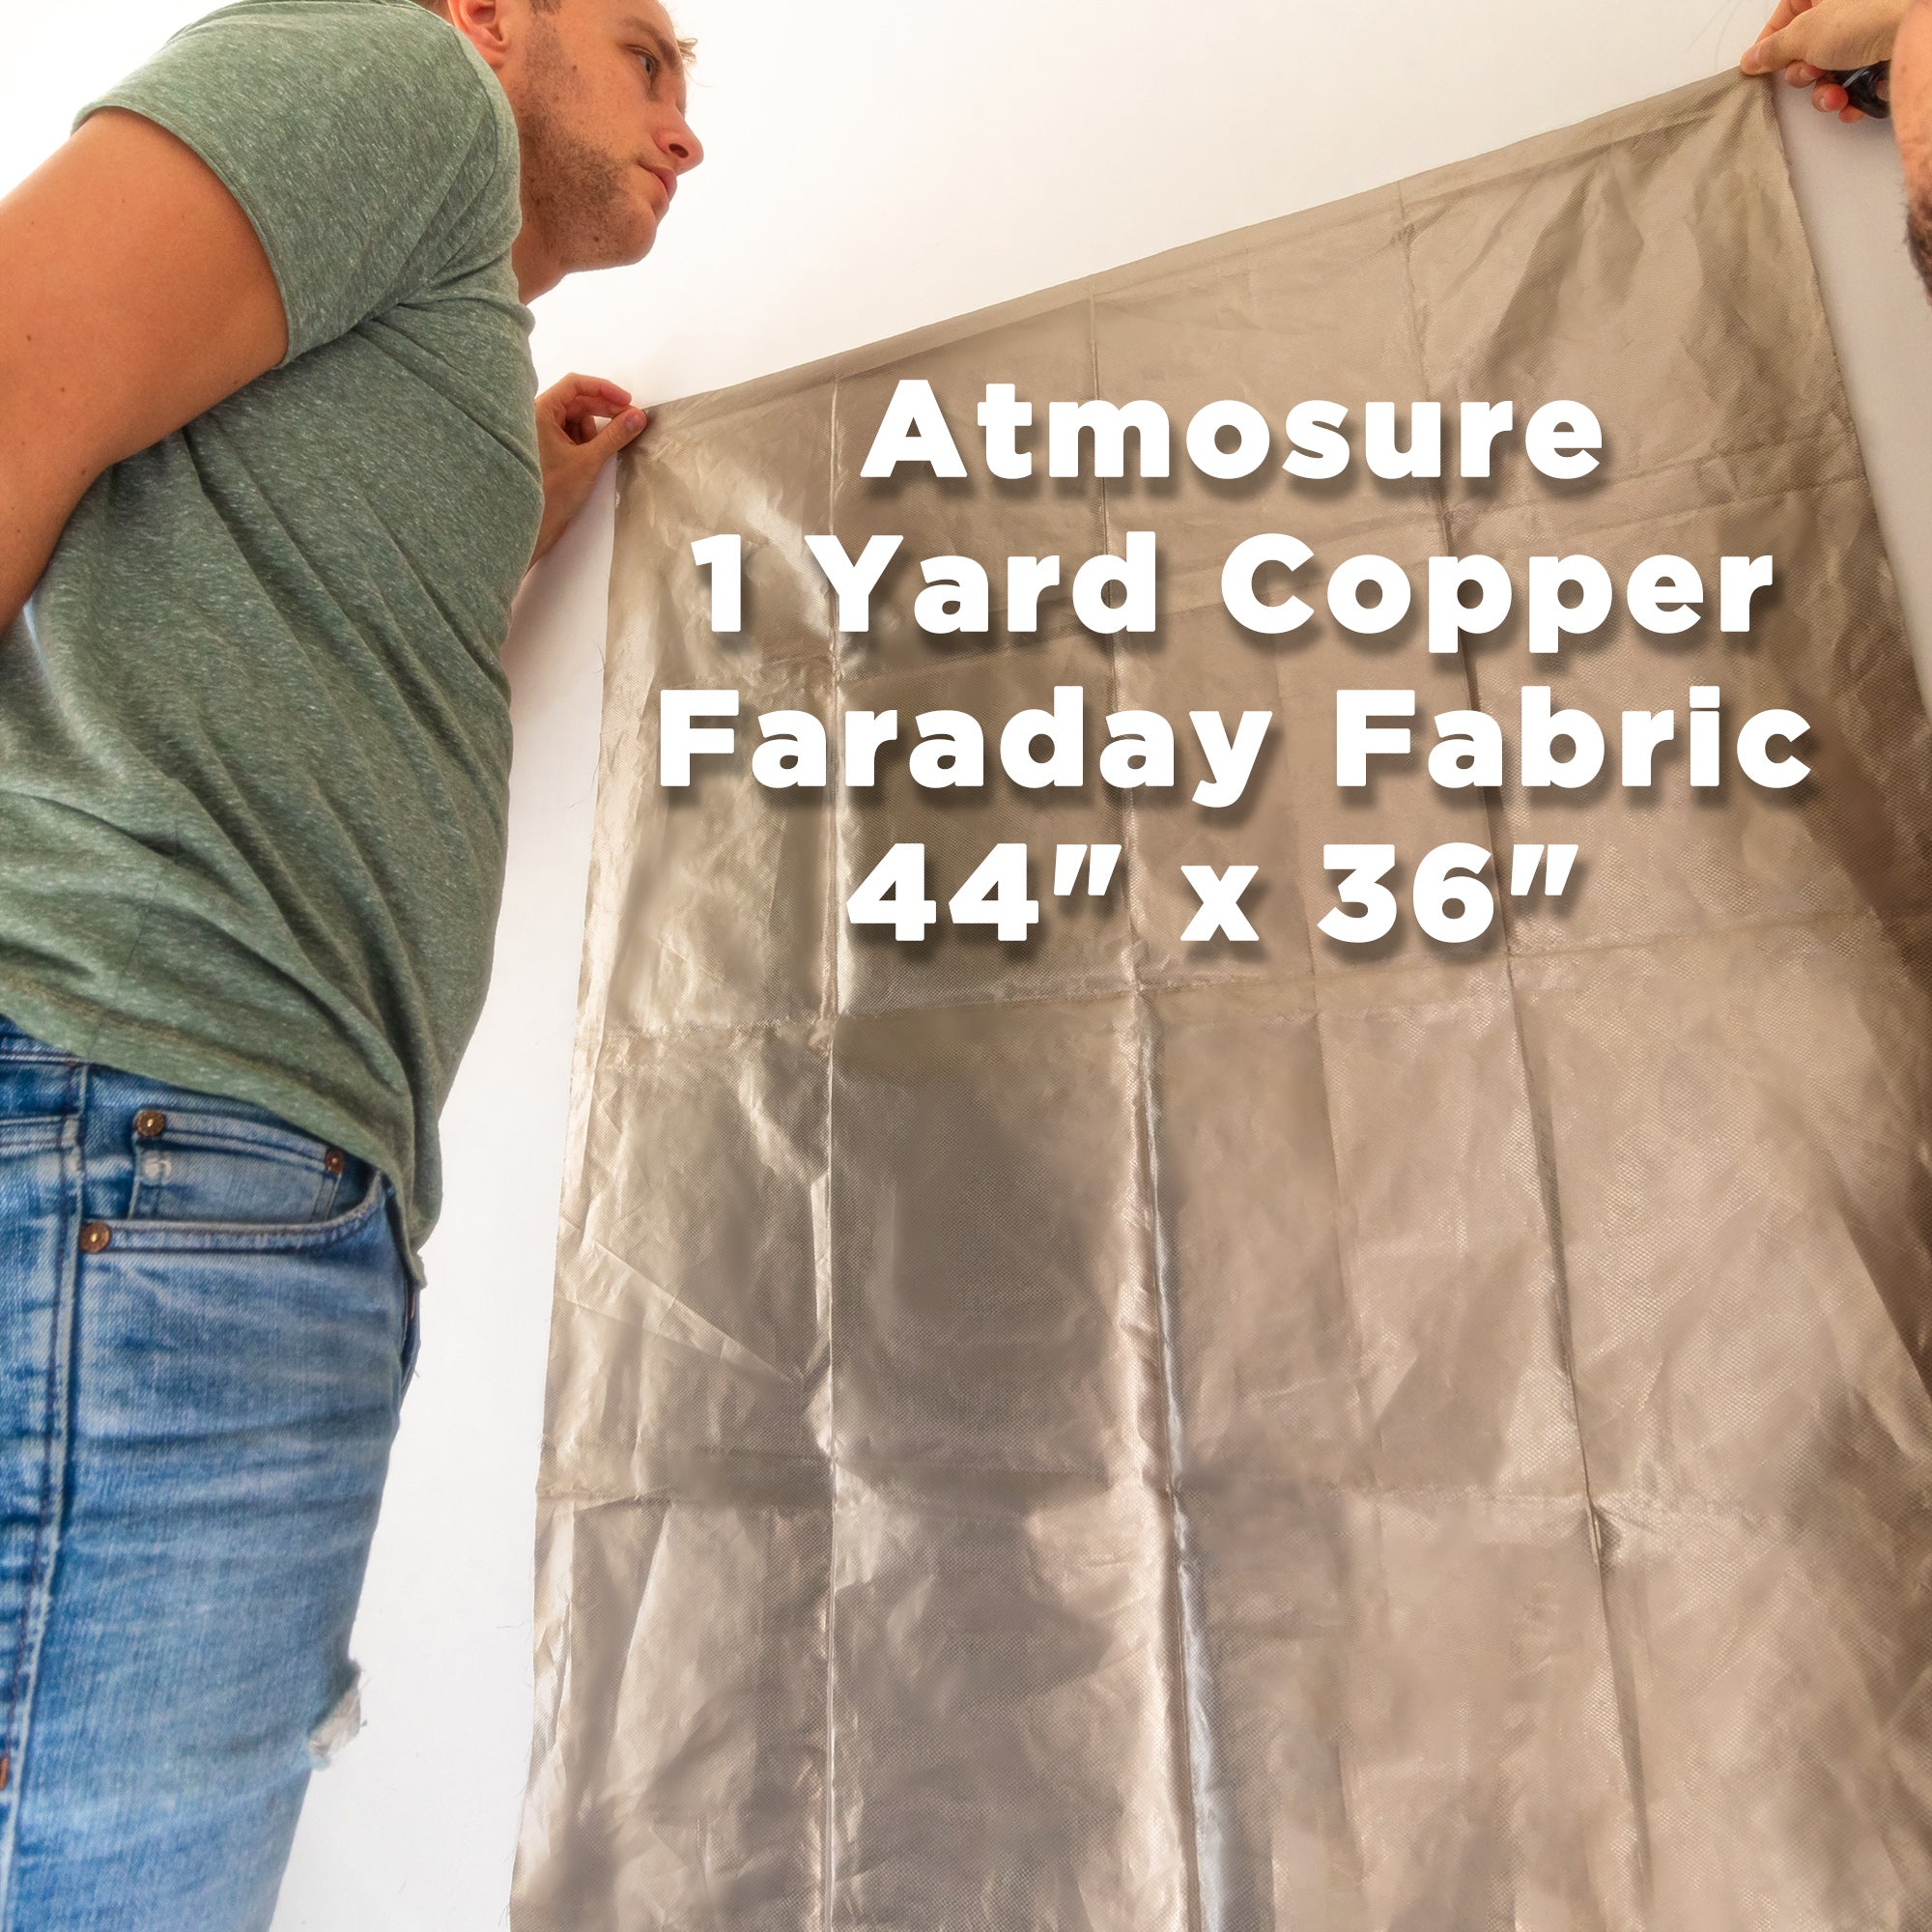 TitanRF Faraday Fabric Kit Includes 44W x 36L Fabric + 36L Tape